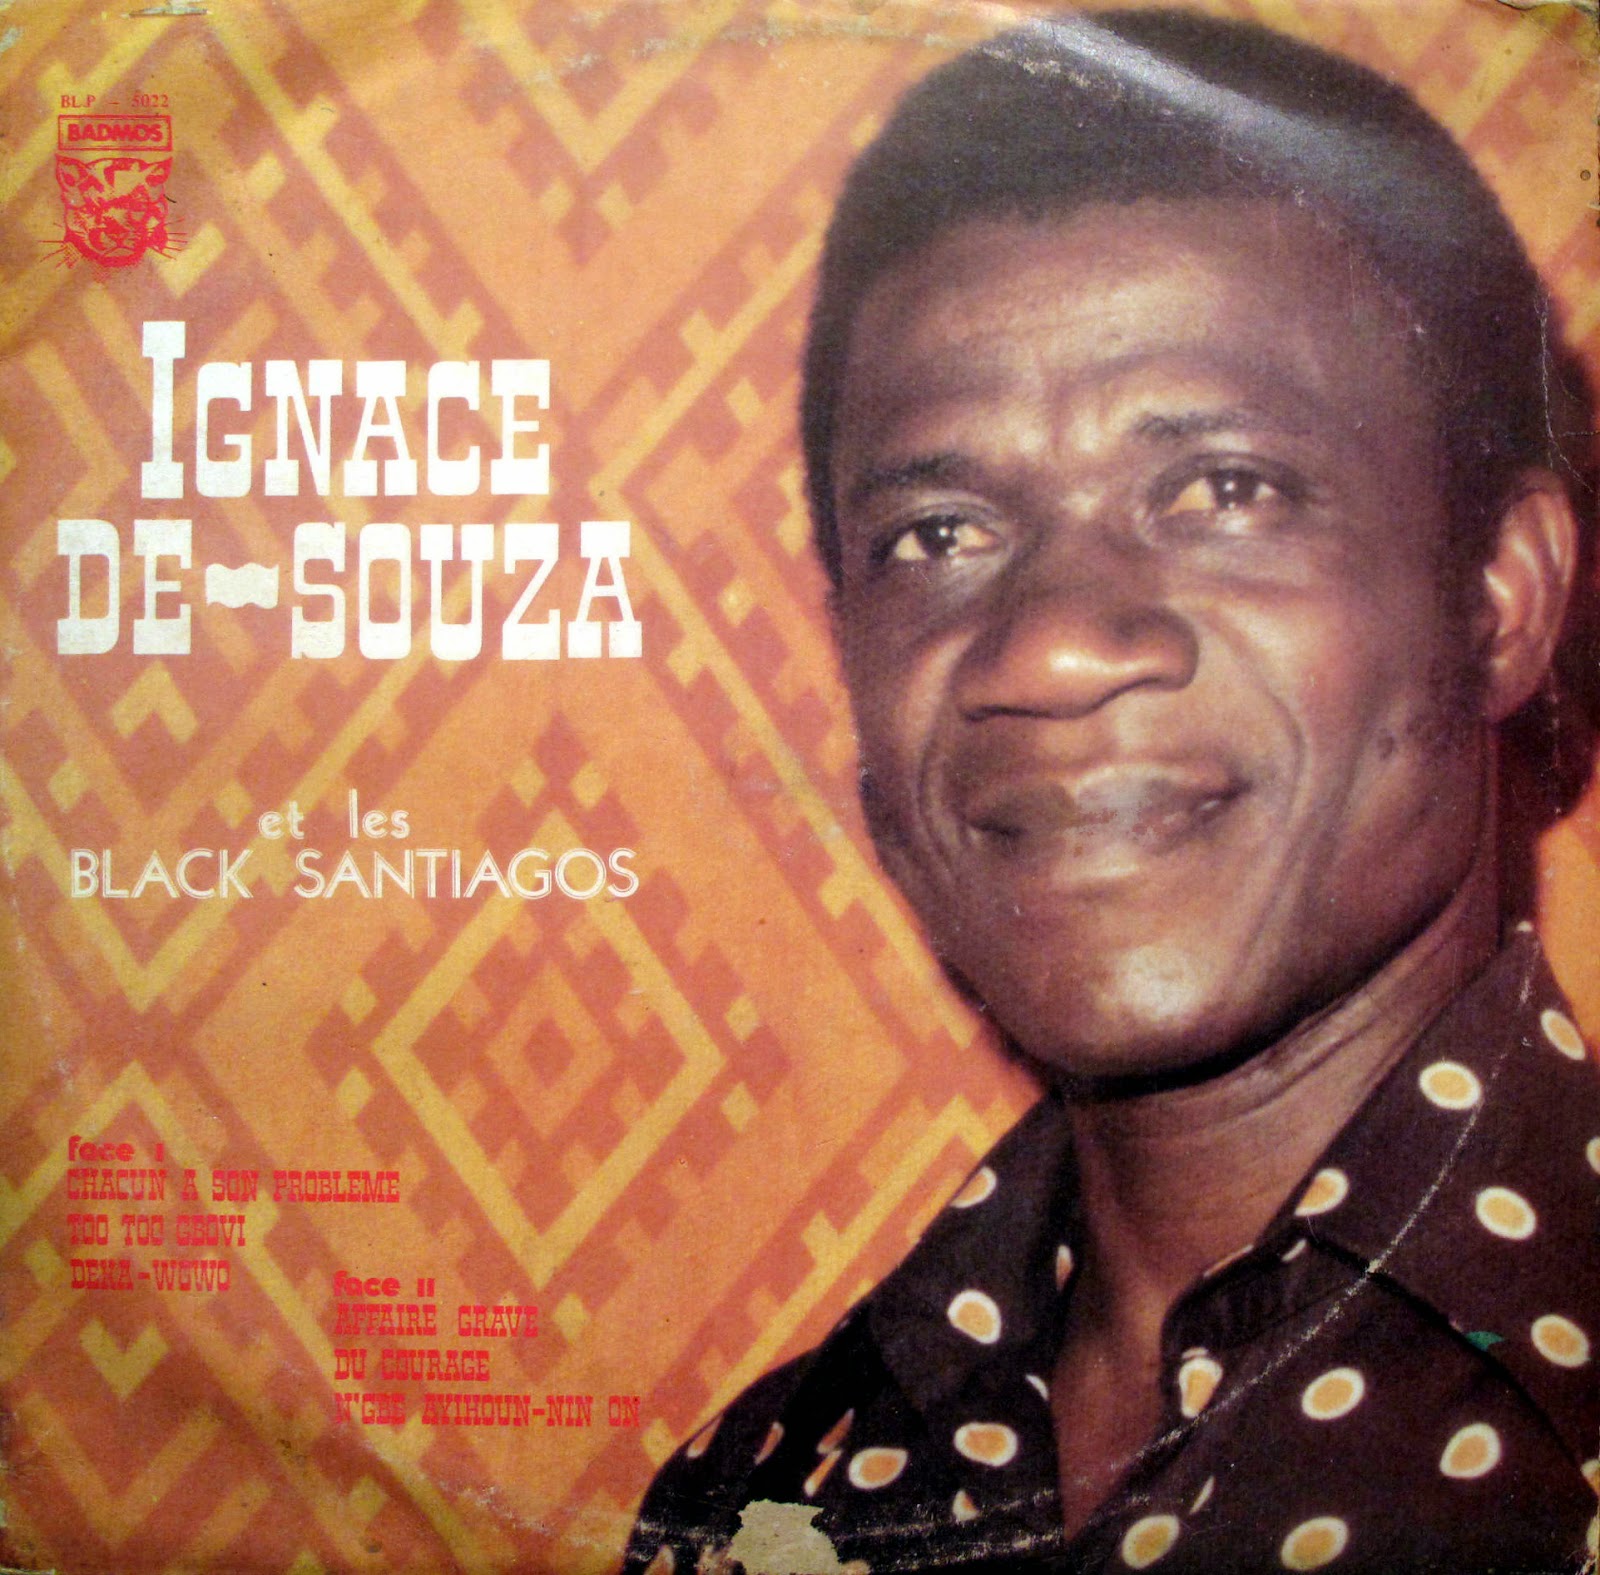 Orchestre Black Santiago & Ignace de Souza (1977) BLP%2B5022